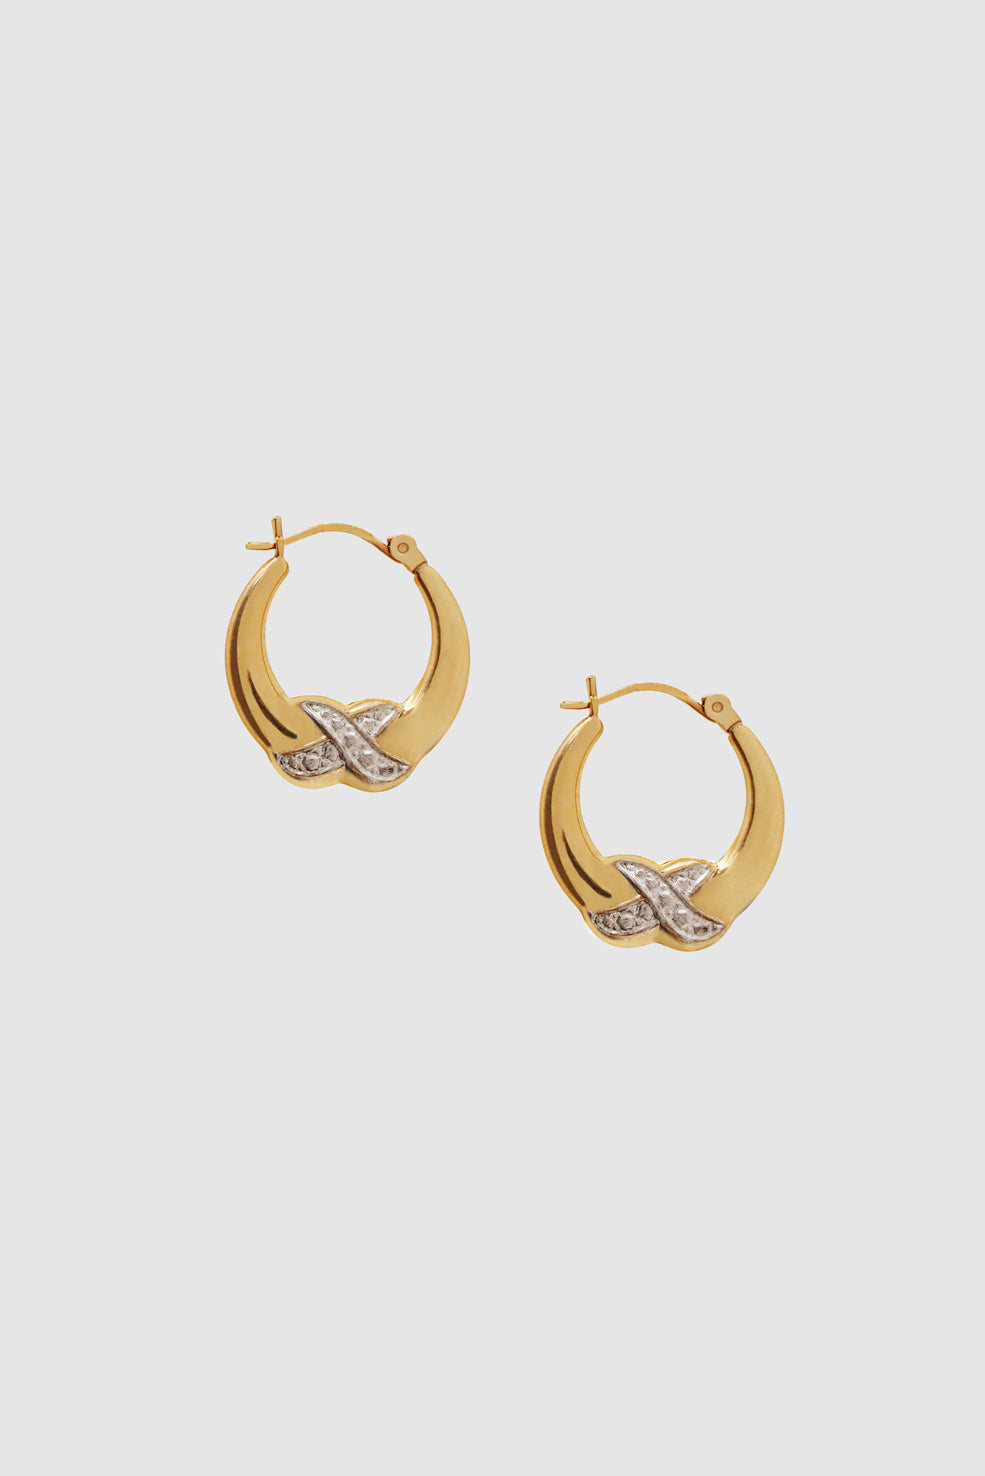 Diamond Cross Hoop Earrings - 14k Gold